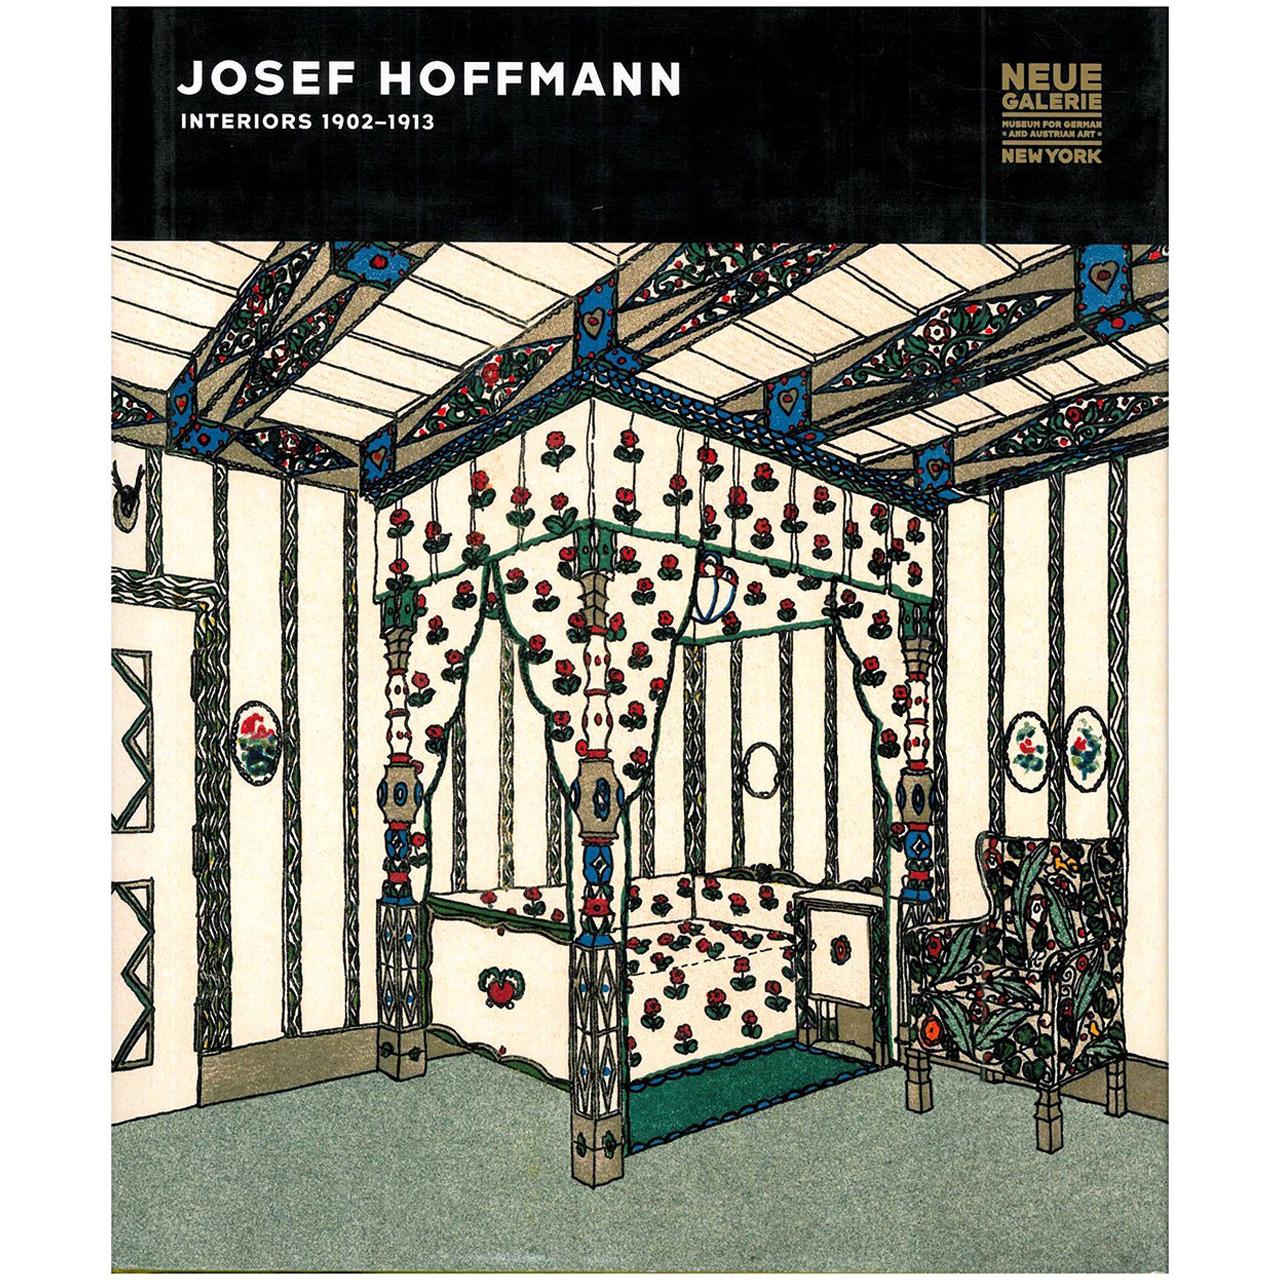 Josef Hoffmann : Interiors 1902-1913 (Livre)